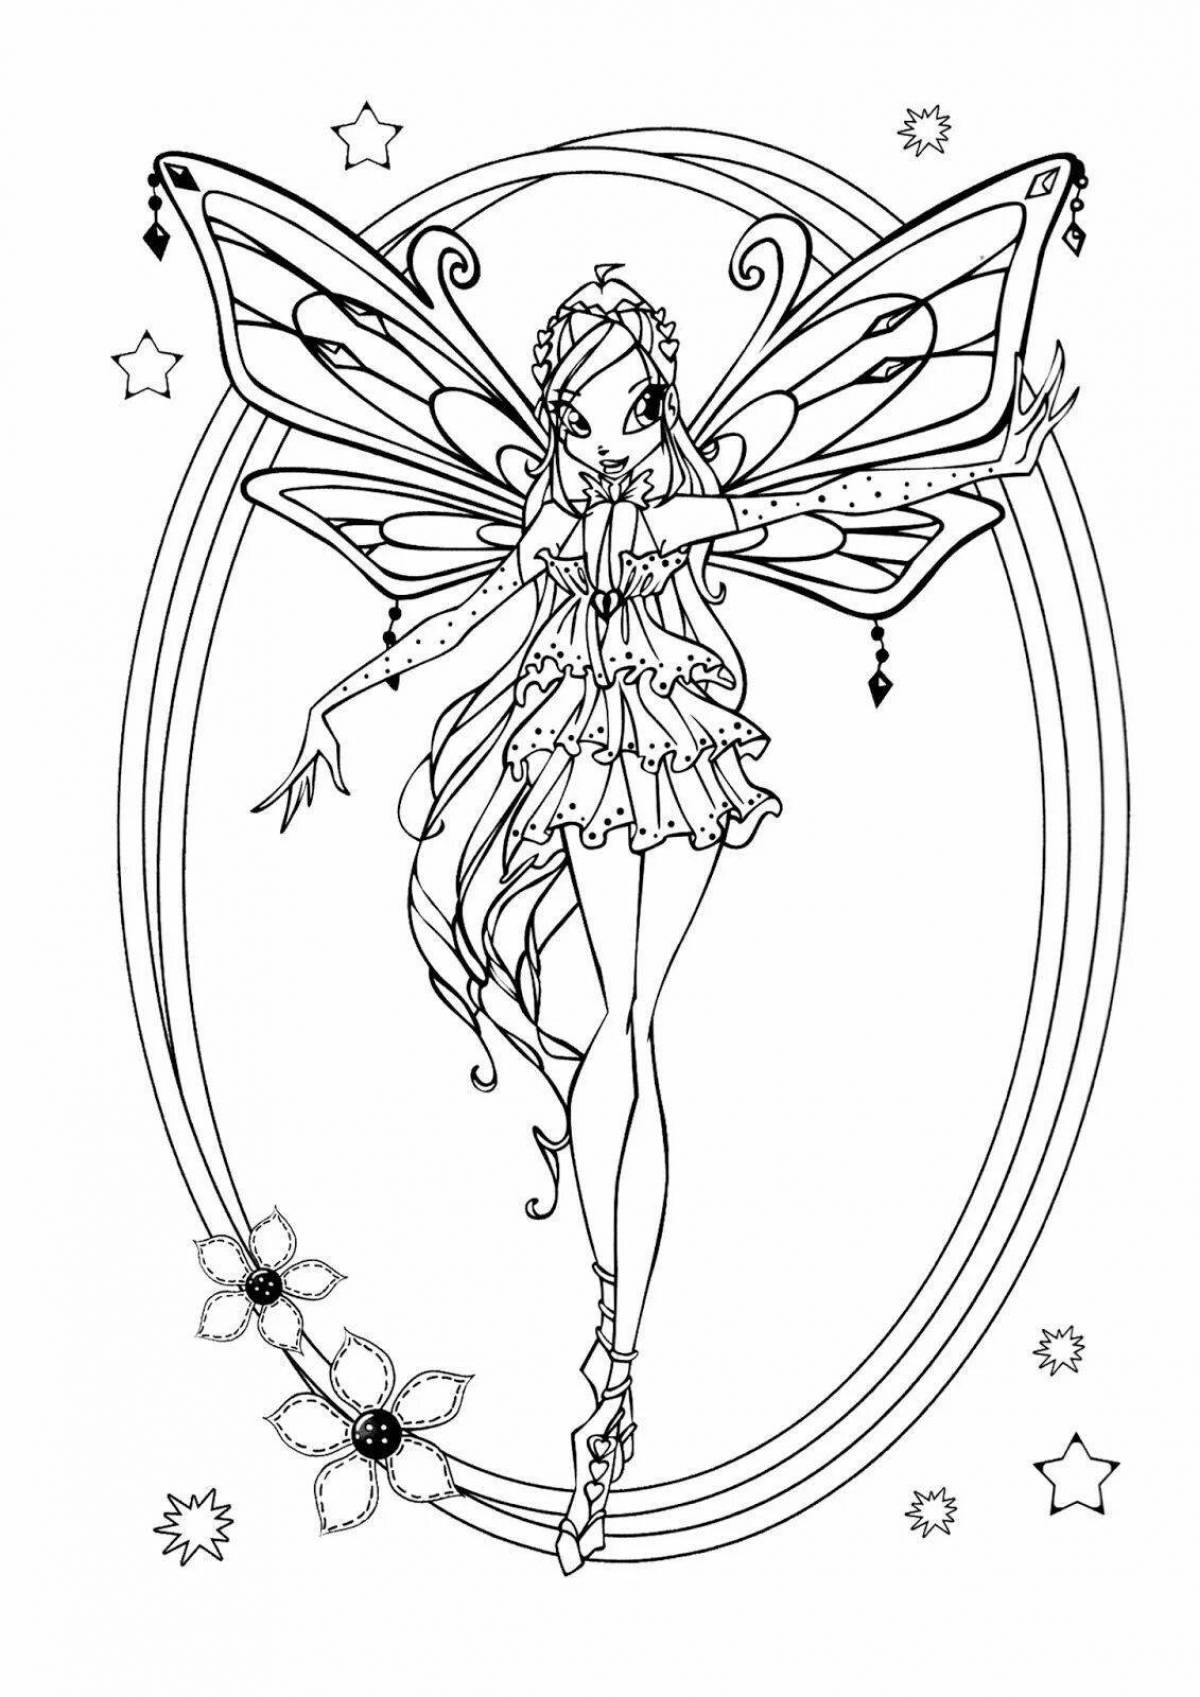 Enchantix bloom coloring grace page